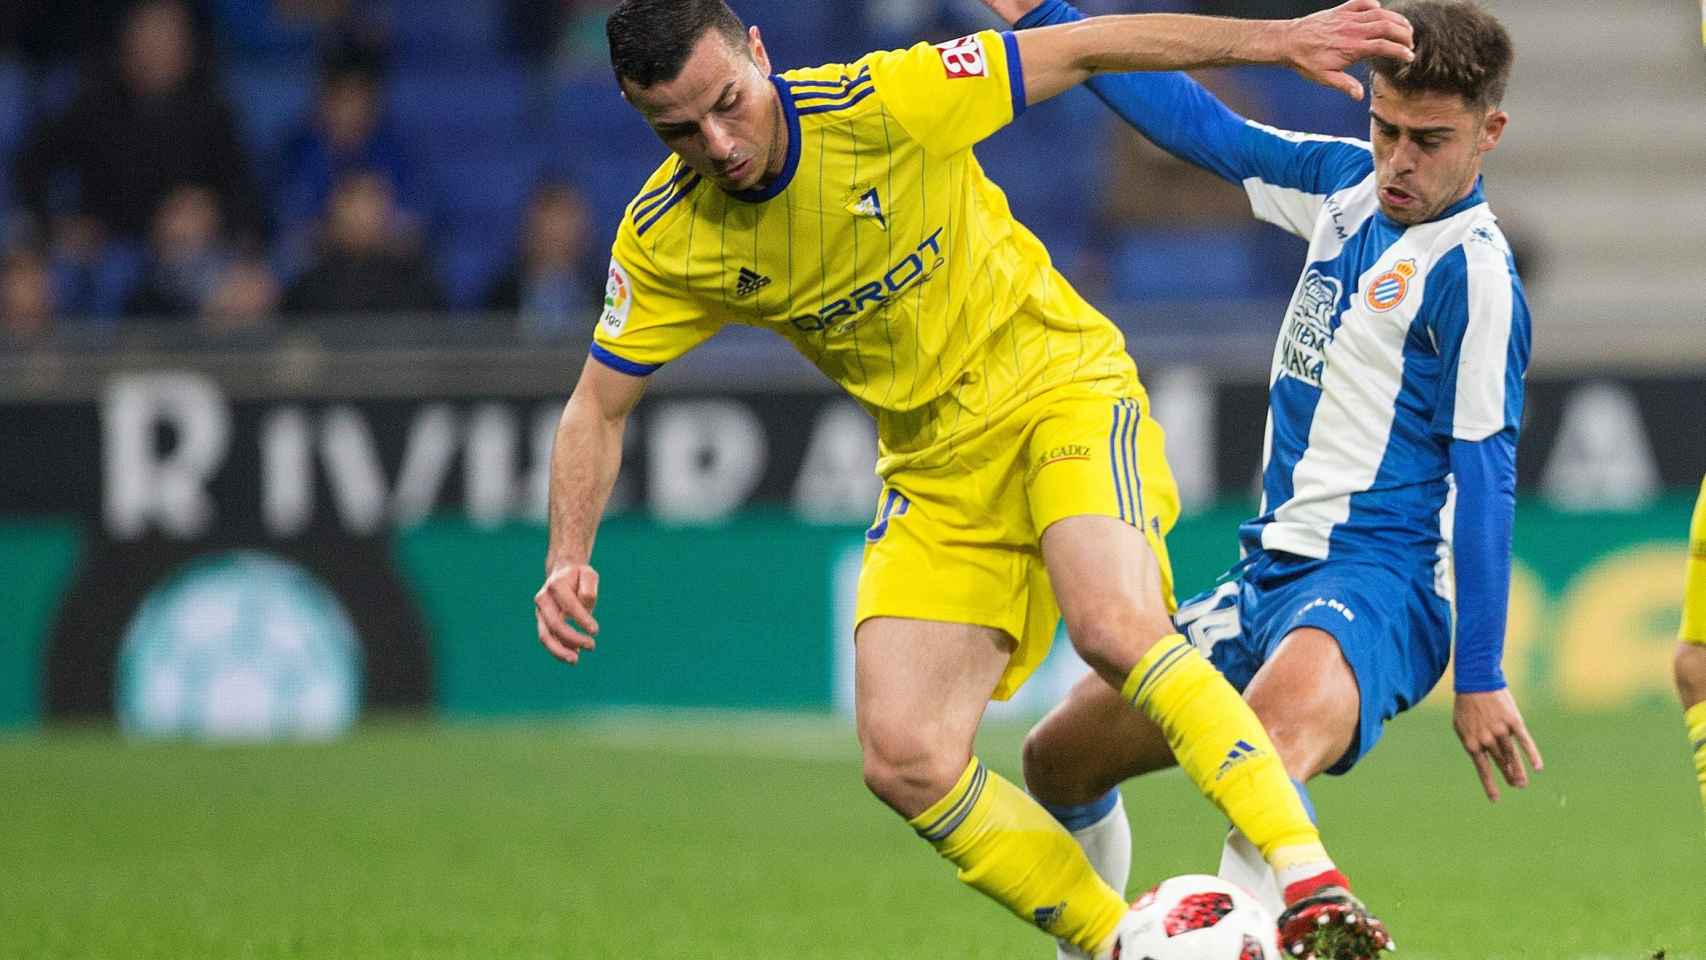 Azamoun intenta llevarse el balón ante Melendo en el Espanyol- Cádiz de Copa del Rey